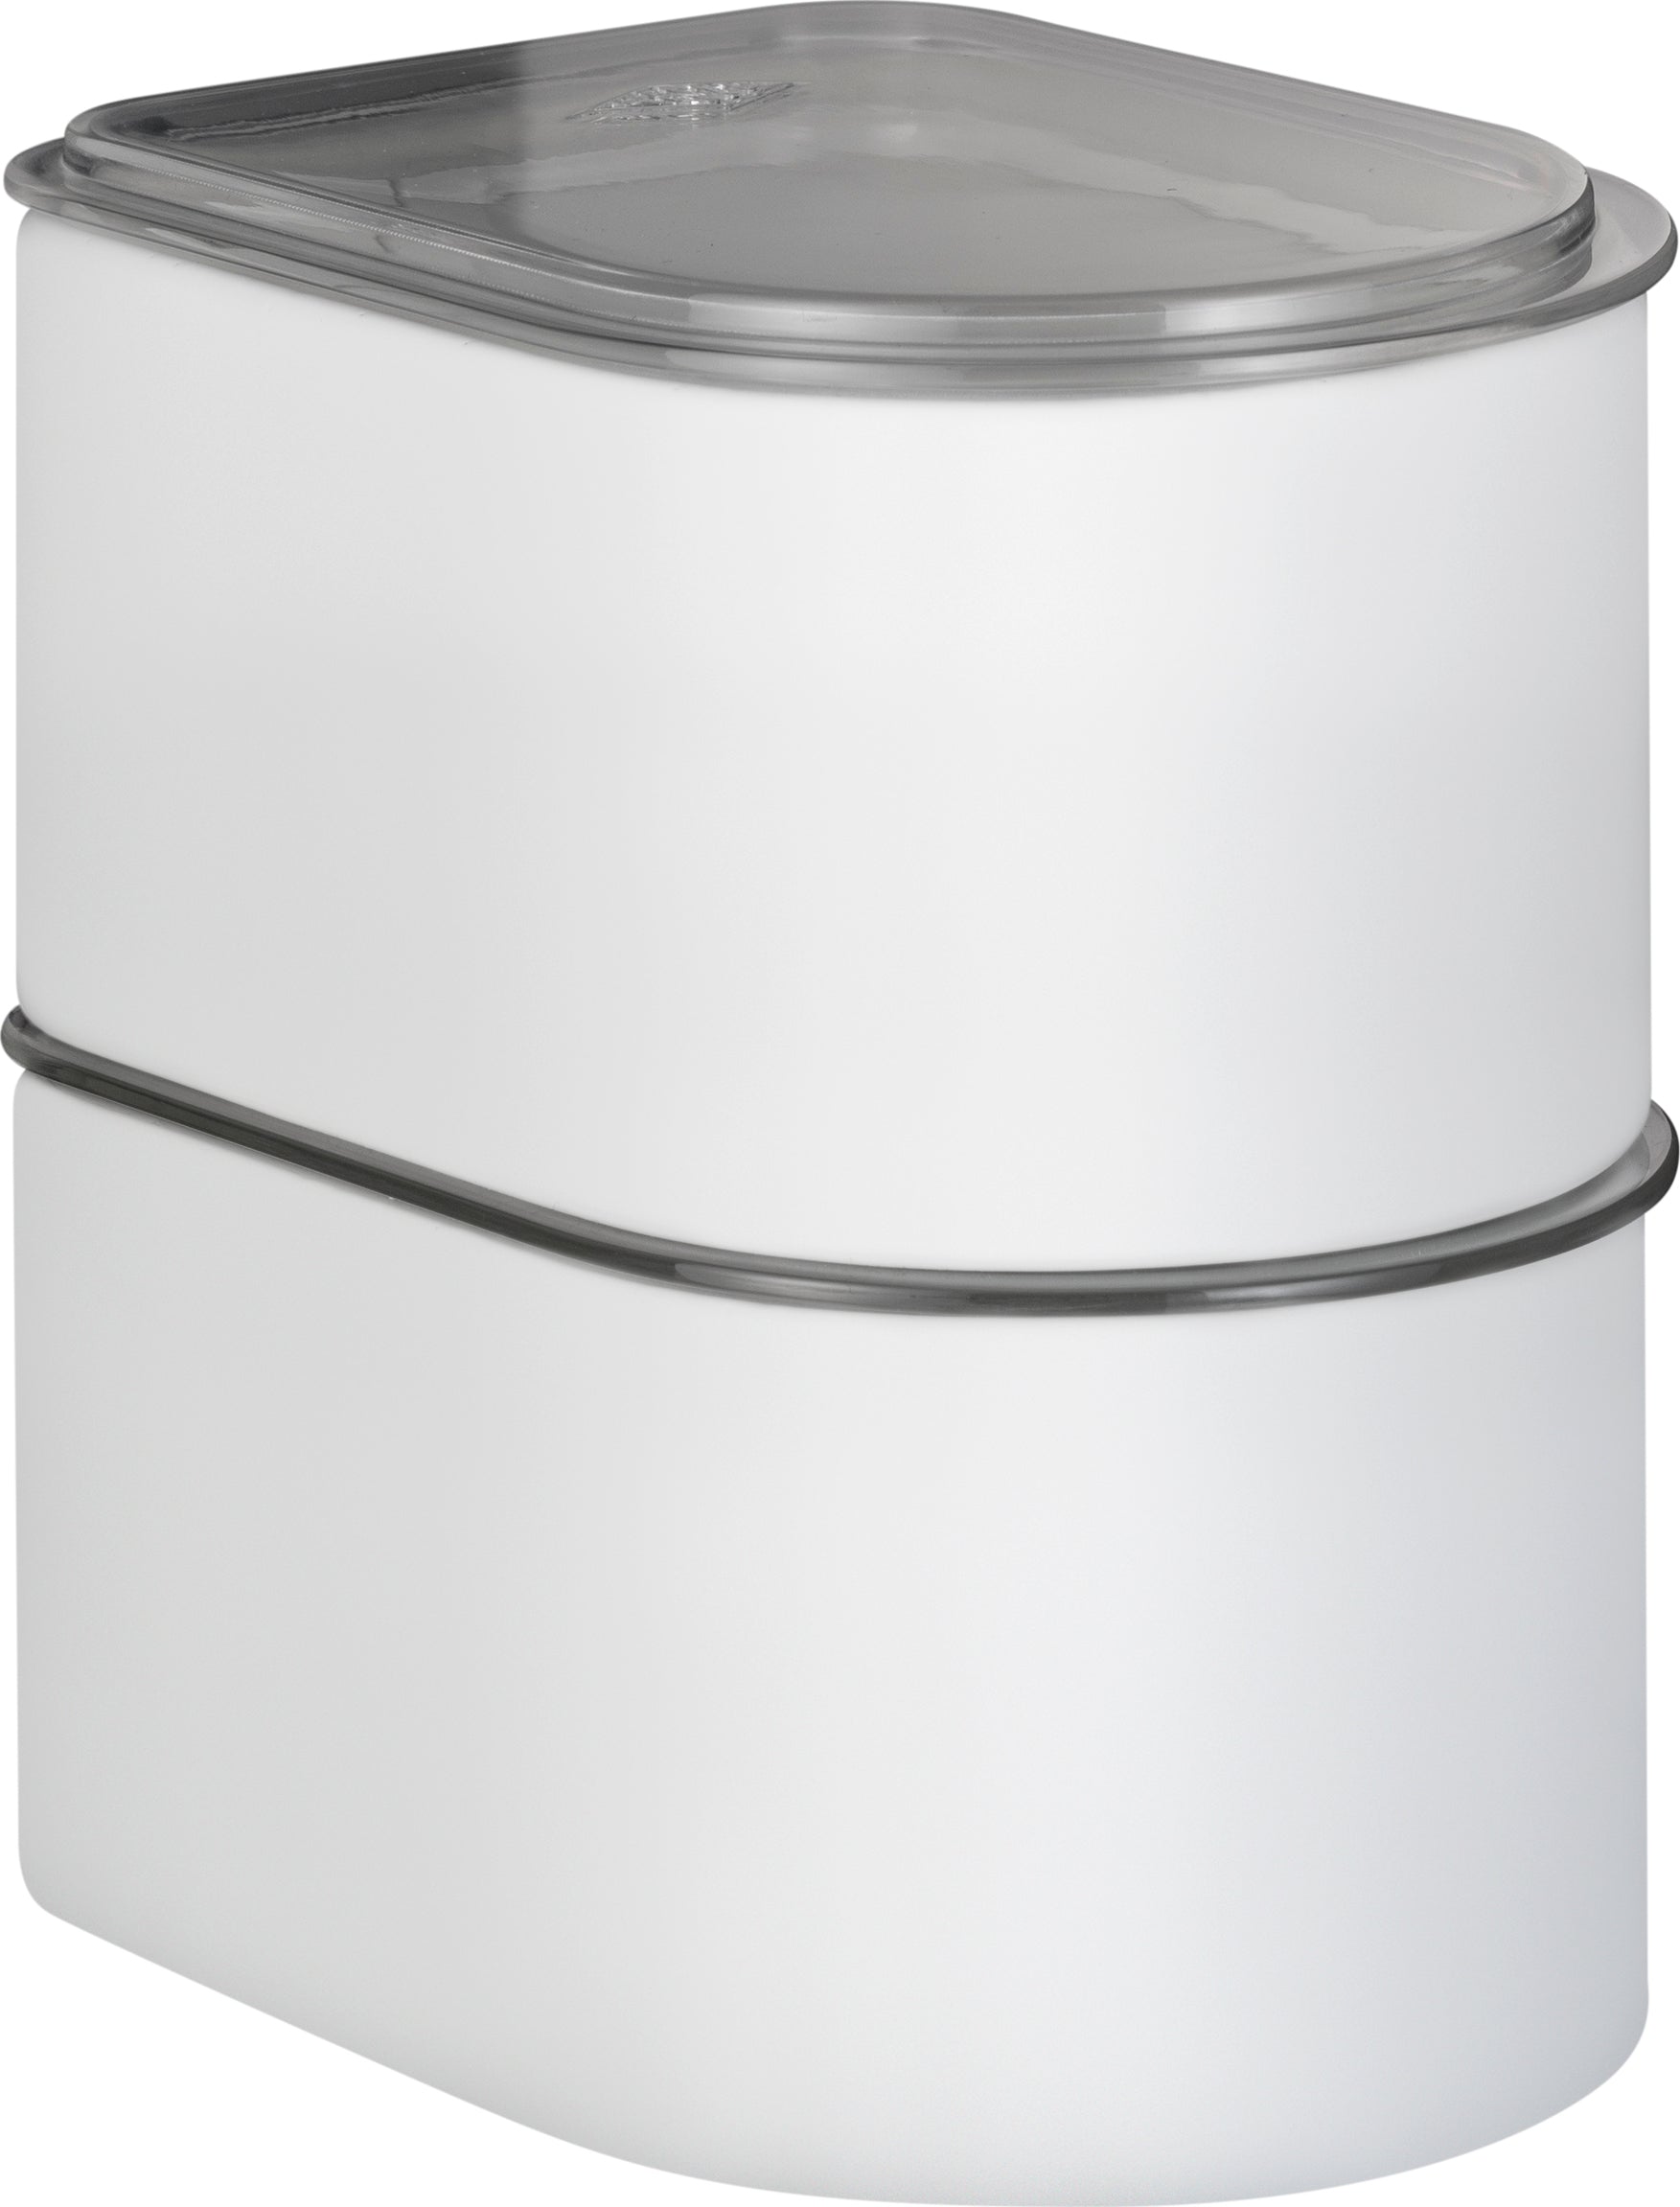 Wesco kanystr 1 litr s akrylovým víkem, písečný matný